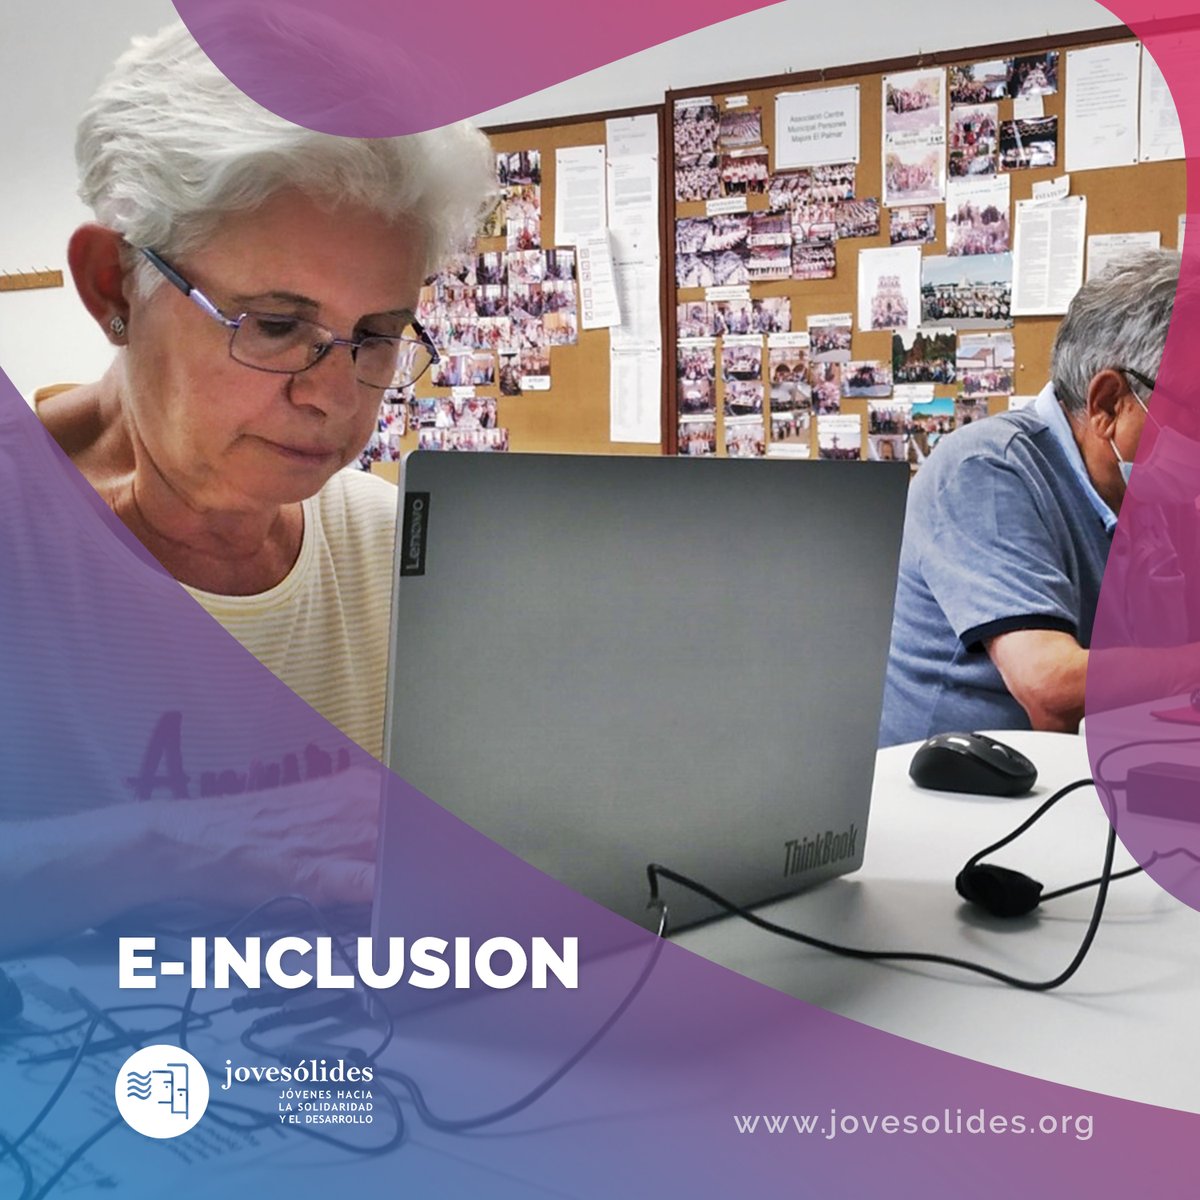 📚 Una de nuestras principales áreas de formación es la E-inclusión, donde tratamos de acortar el camino entre las nuevas tecnologías #TIC y las #PersonasMayores 🖥📲

🔝 El objetivo es ofrecerles un #EnvejecimientoActivo y reducir la #BrechaDigital

#InnovaciónSocial #Inclusión